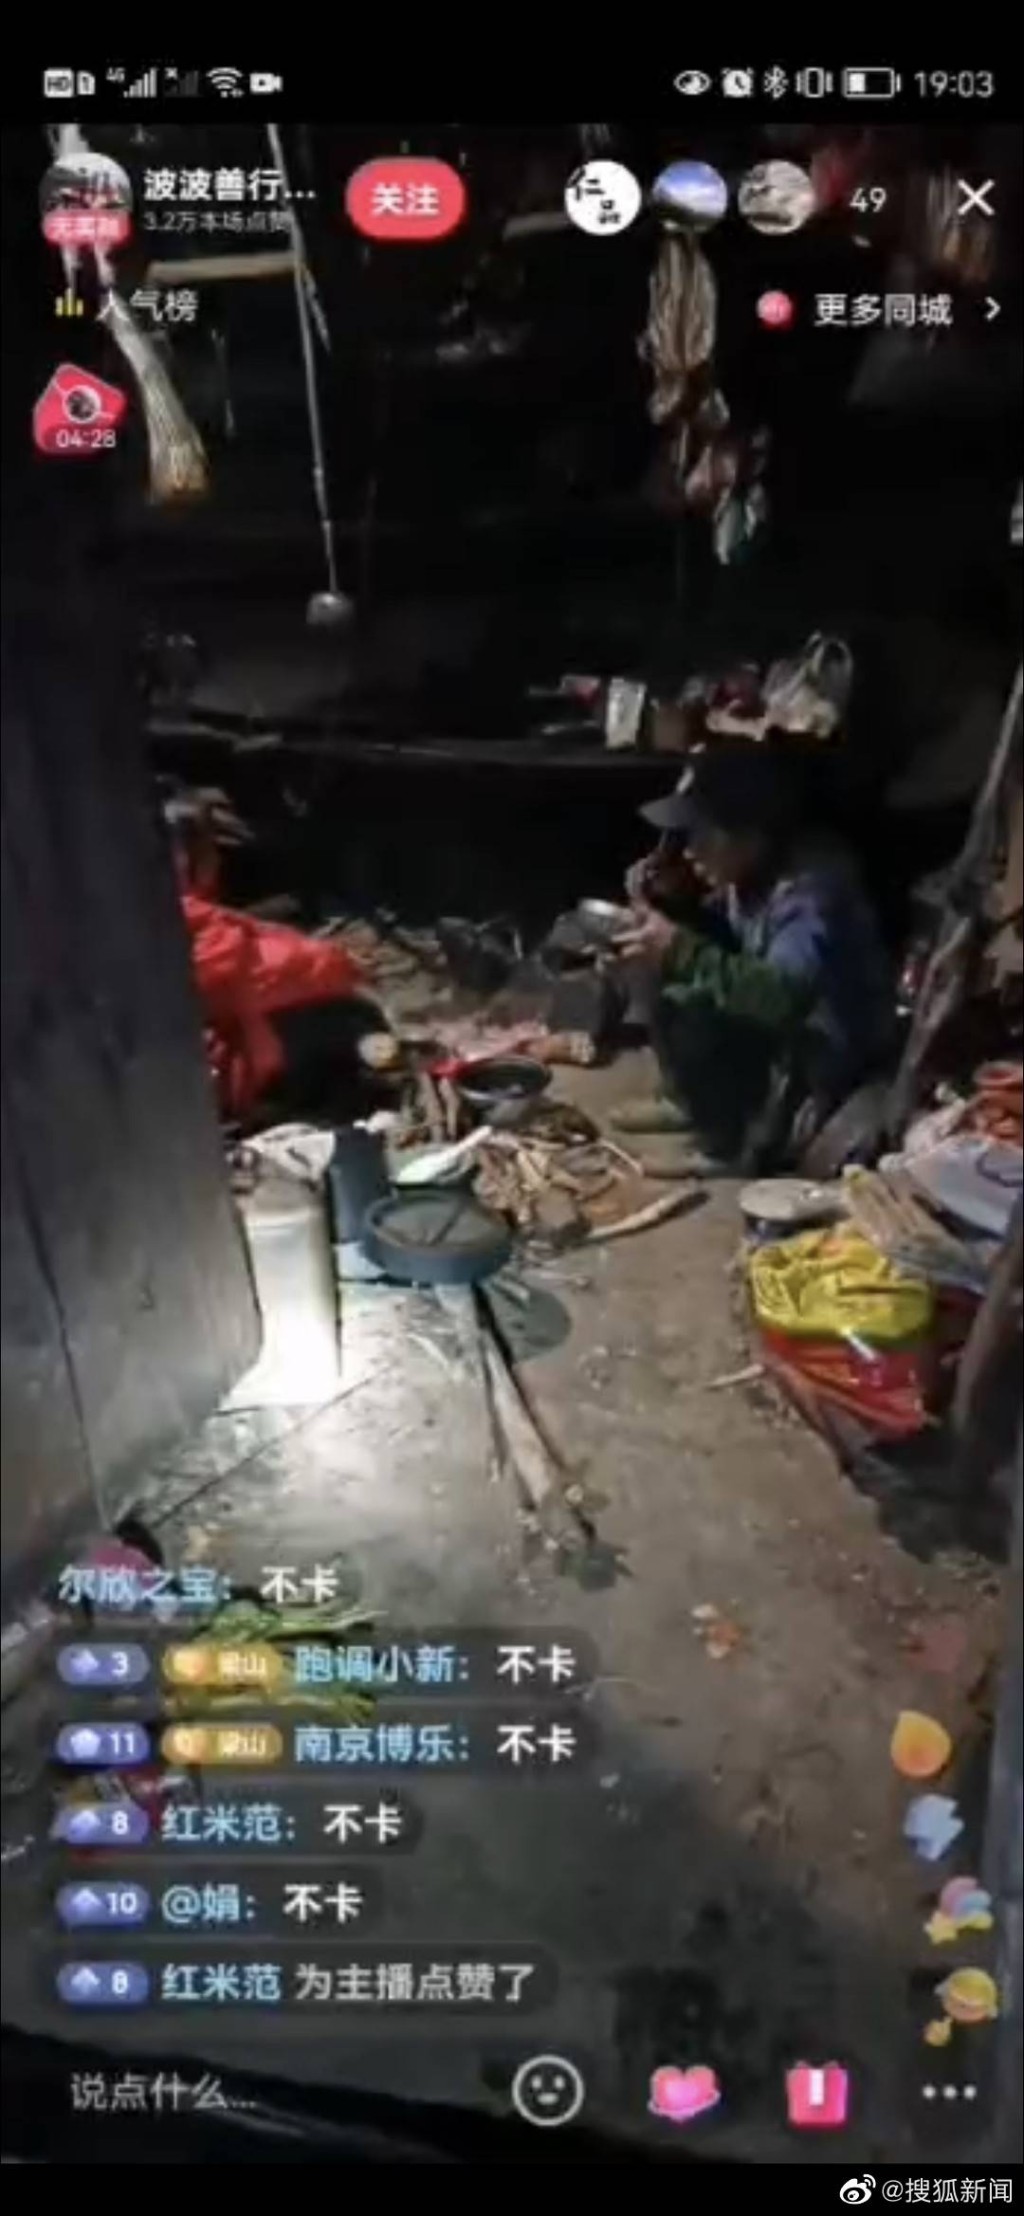 「雲南波波」拍攝環境較差的小房子聲稱是村民住家，實際上只是雜物房並不住人。 網圖